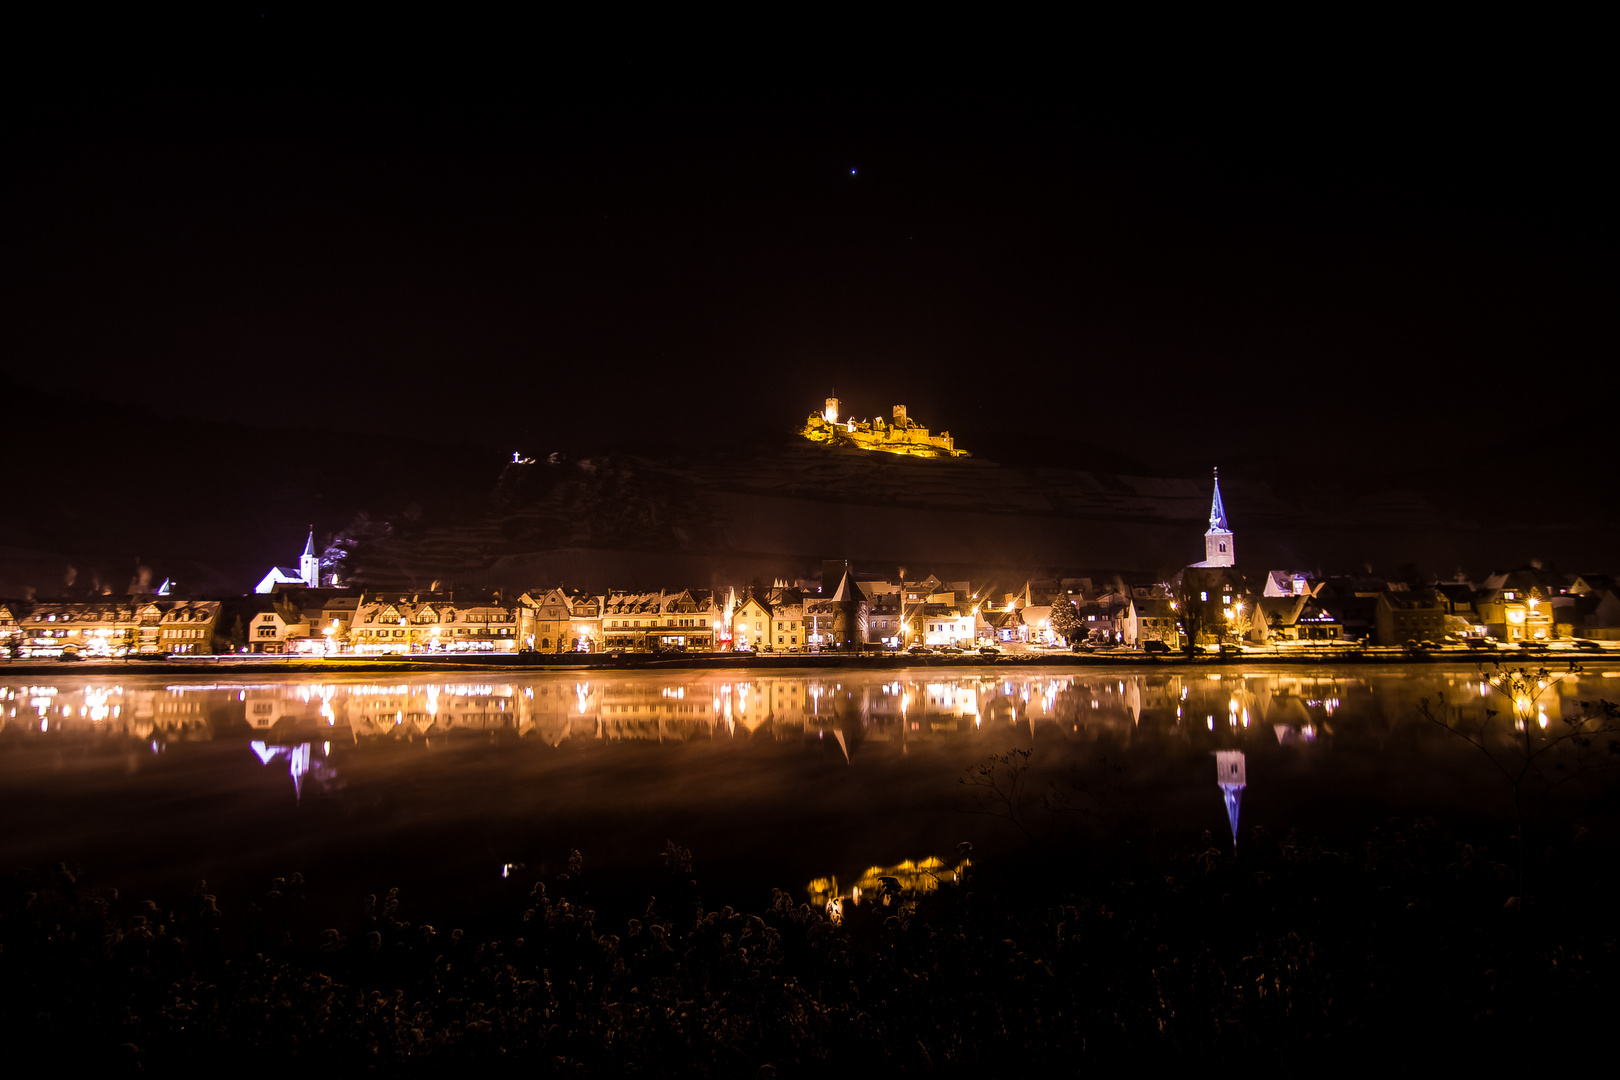 Mosel mit Burg Thurant bei Nacht